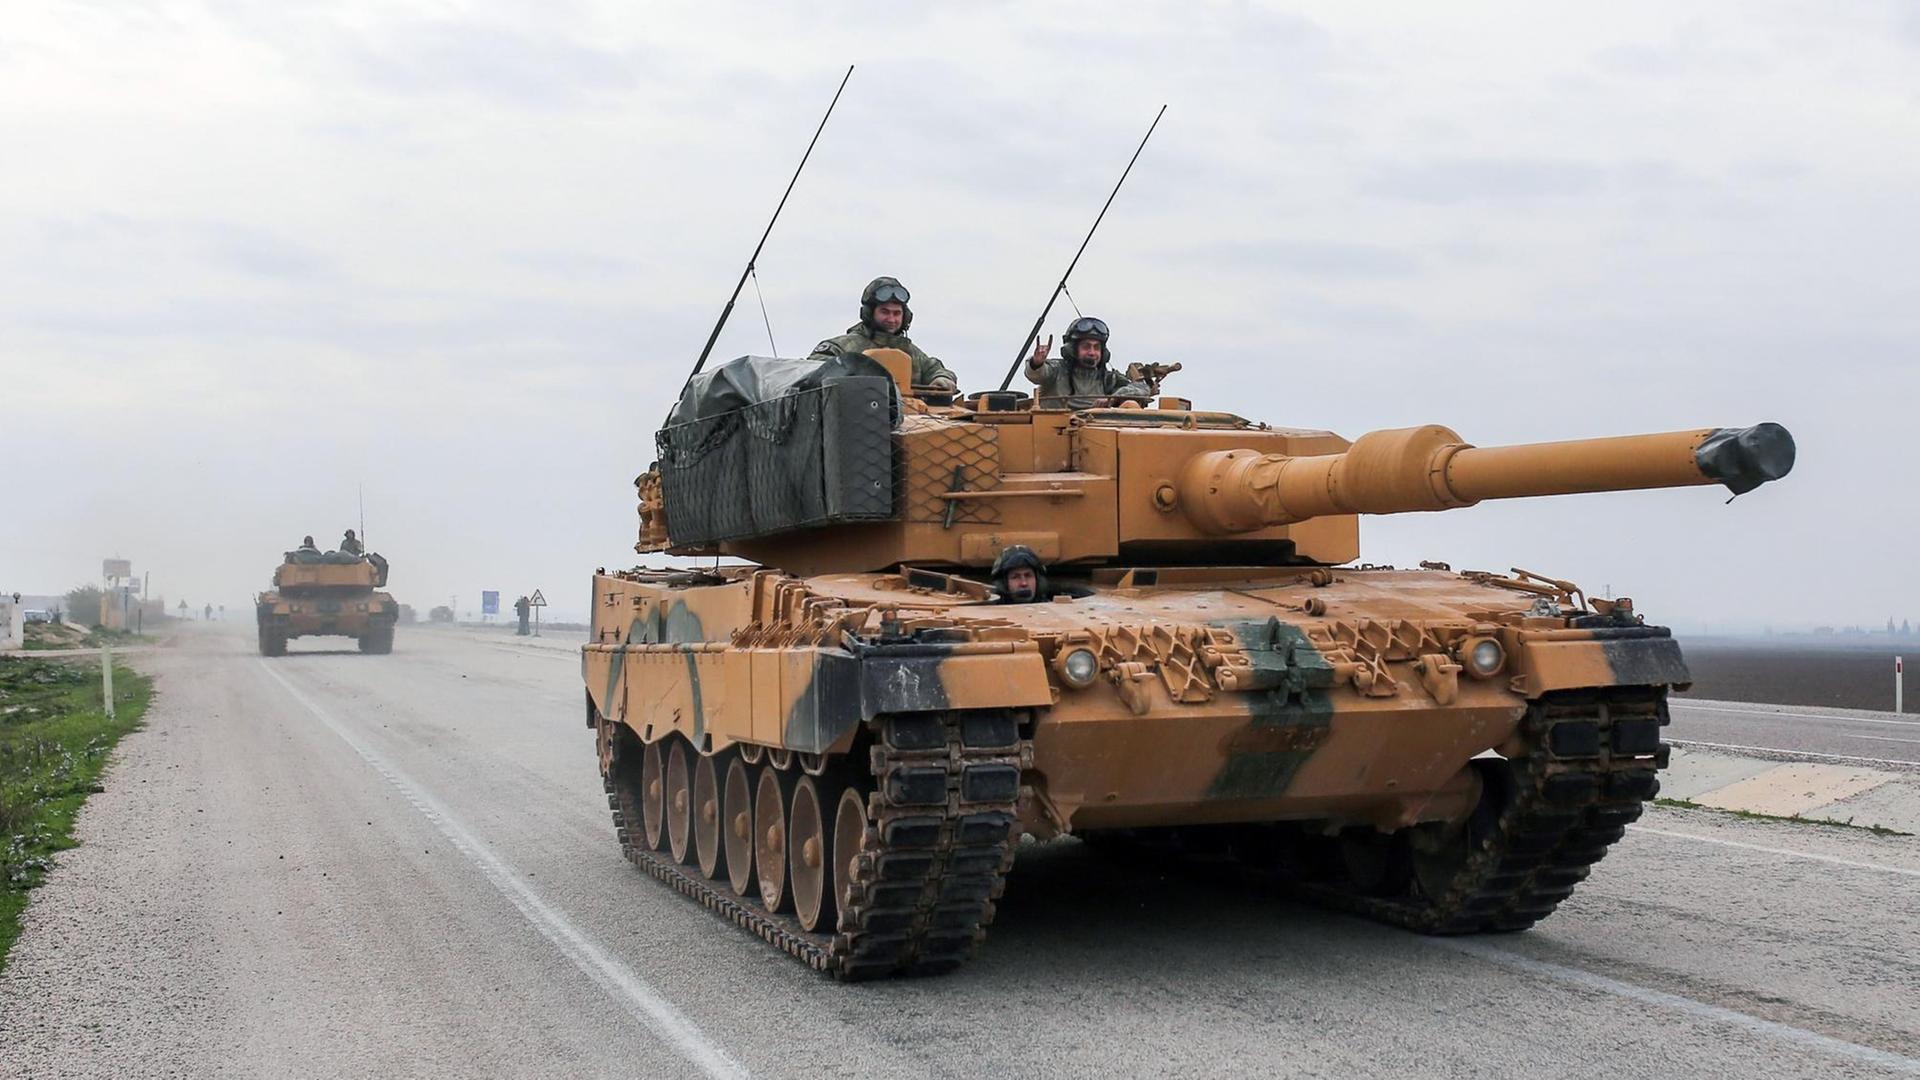 Türkische Panzer fahren am 21.01.2018 in der Provinz Hatay, Türkei, in der Nähe der syrischen Grenze. Die Türkei hat mit einer groß angelegten Militär-Offensive gegen kurdische Verbände in Syrien international Besorgnis ausgelöst.